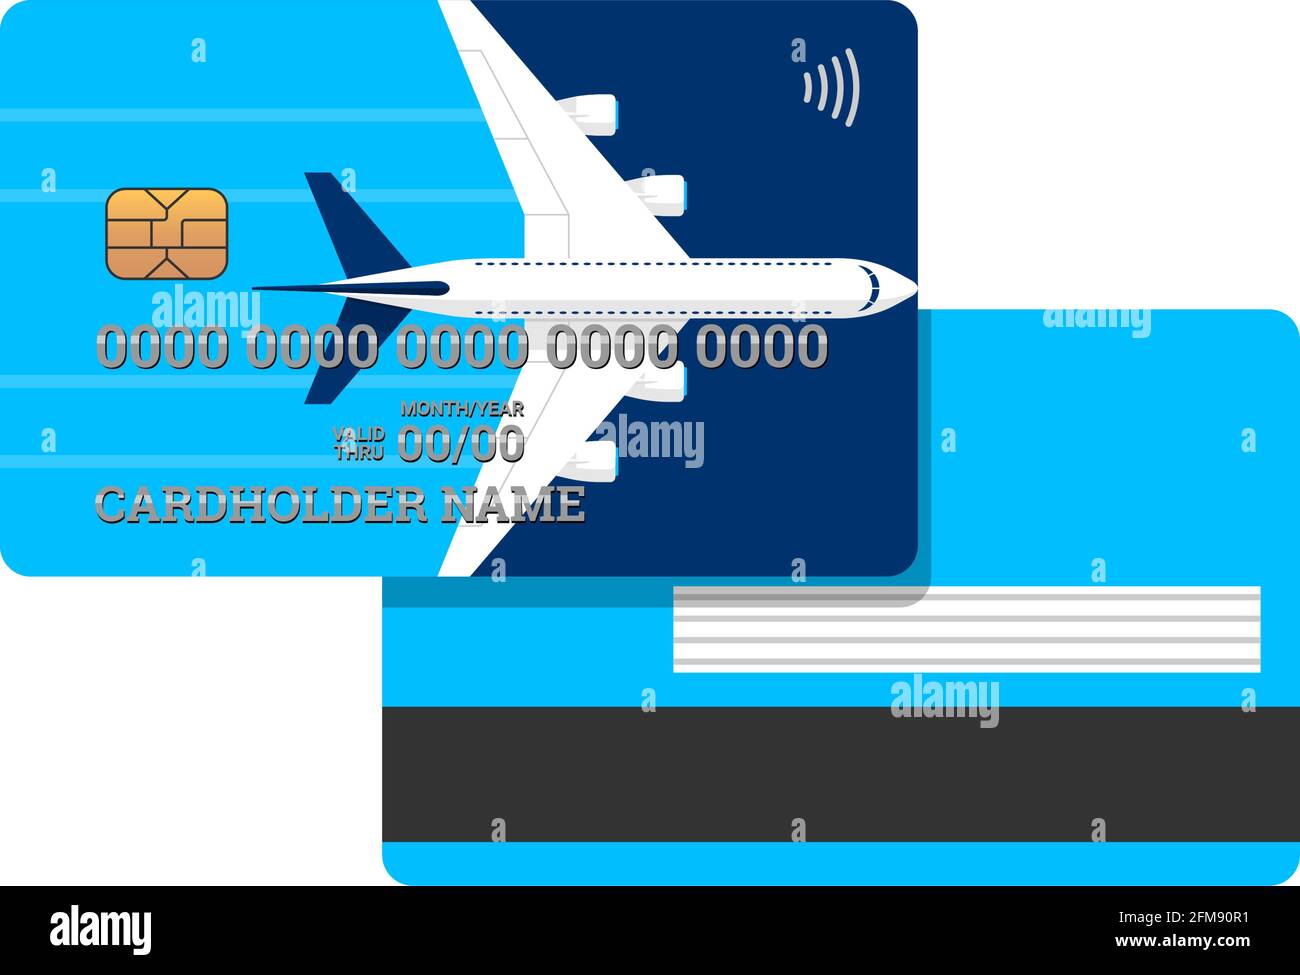 Meilen-Bankkarte mit Flugzeug auf blauem Cover vorne und hinten Designvorlage. Plastikkreditkarte mit Boni für häufige Flugreisen Vektor isolierte Illustration Stock Vektor